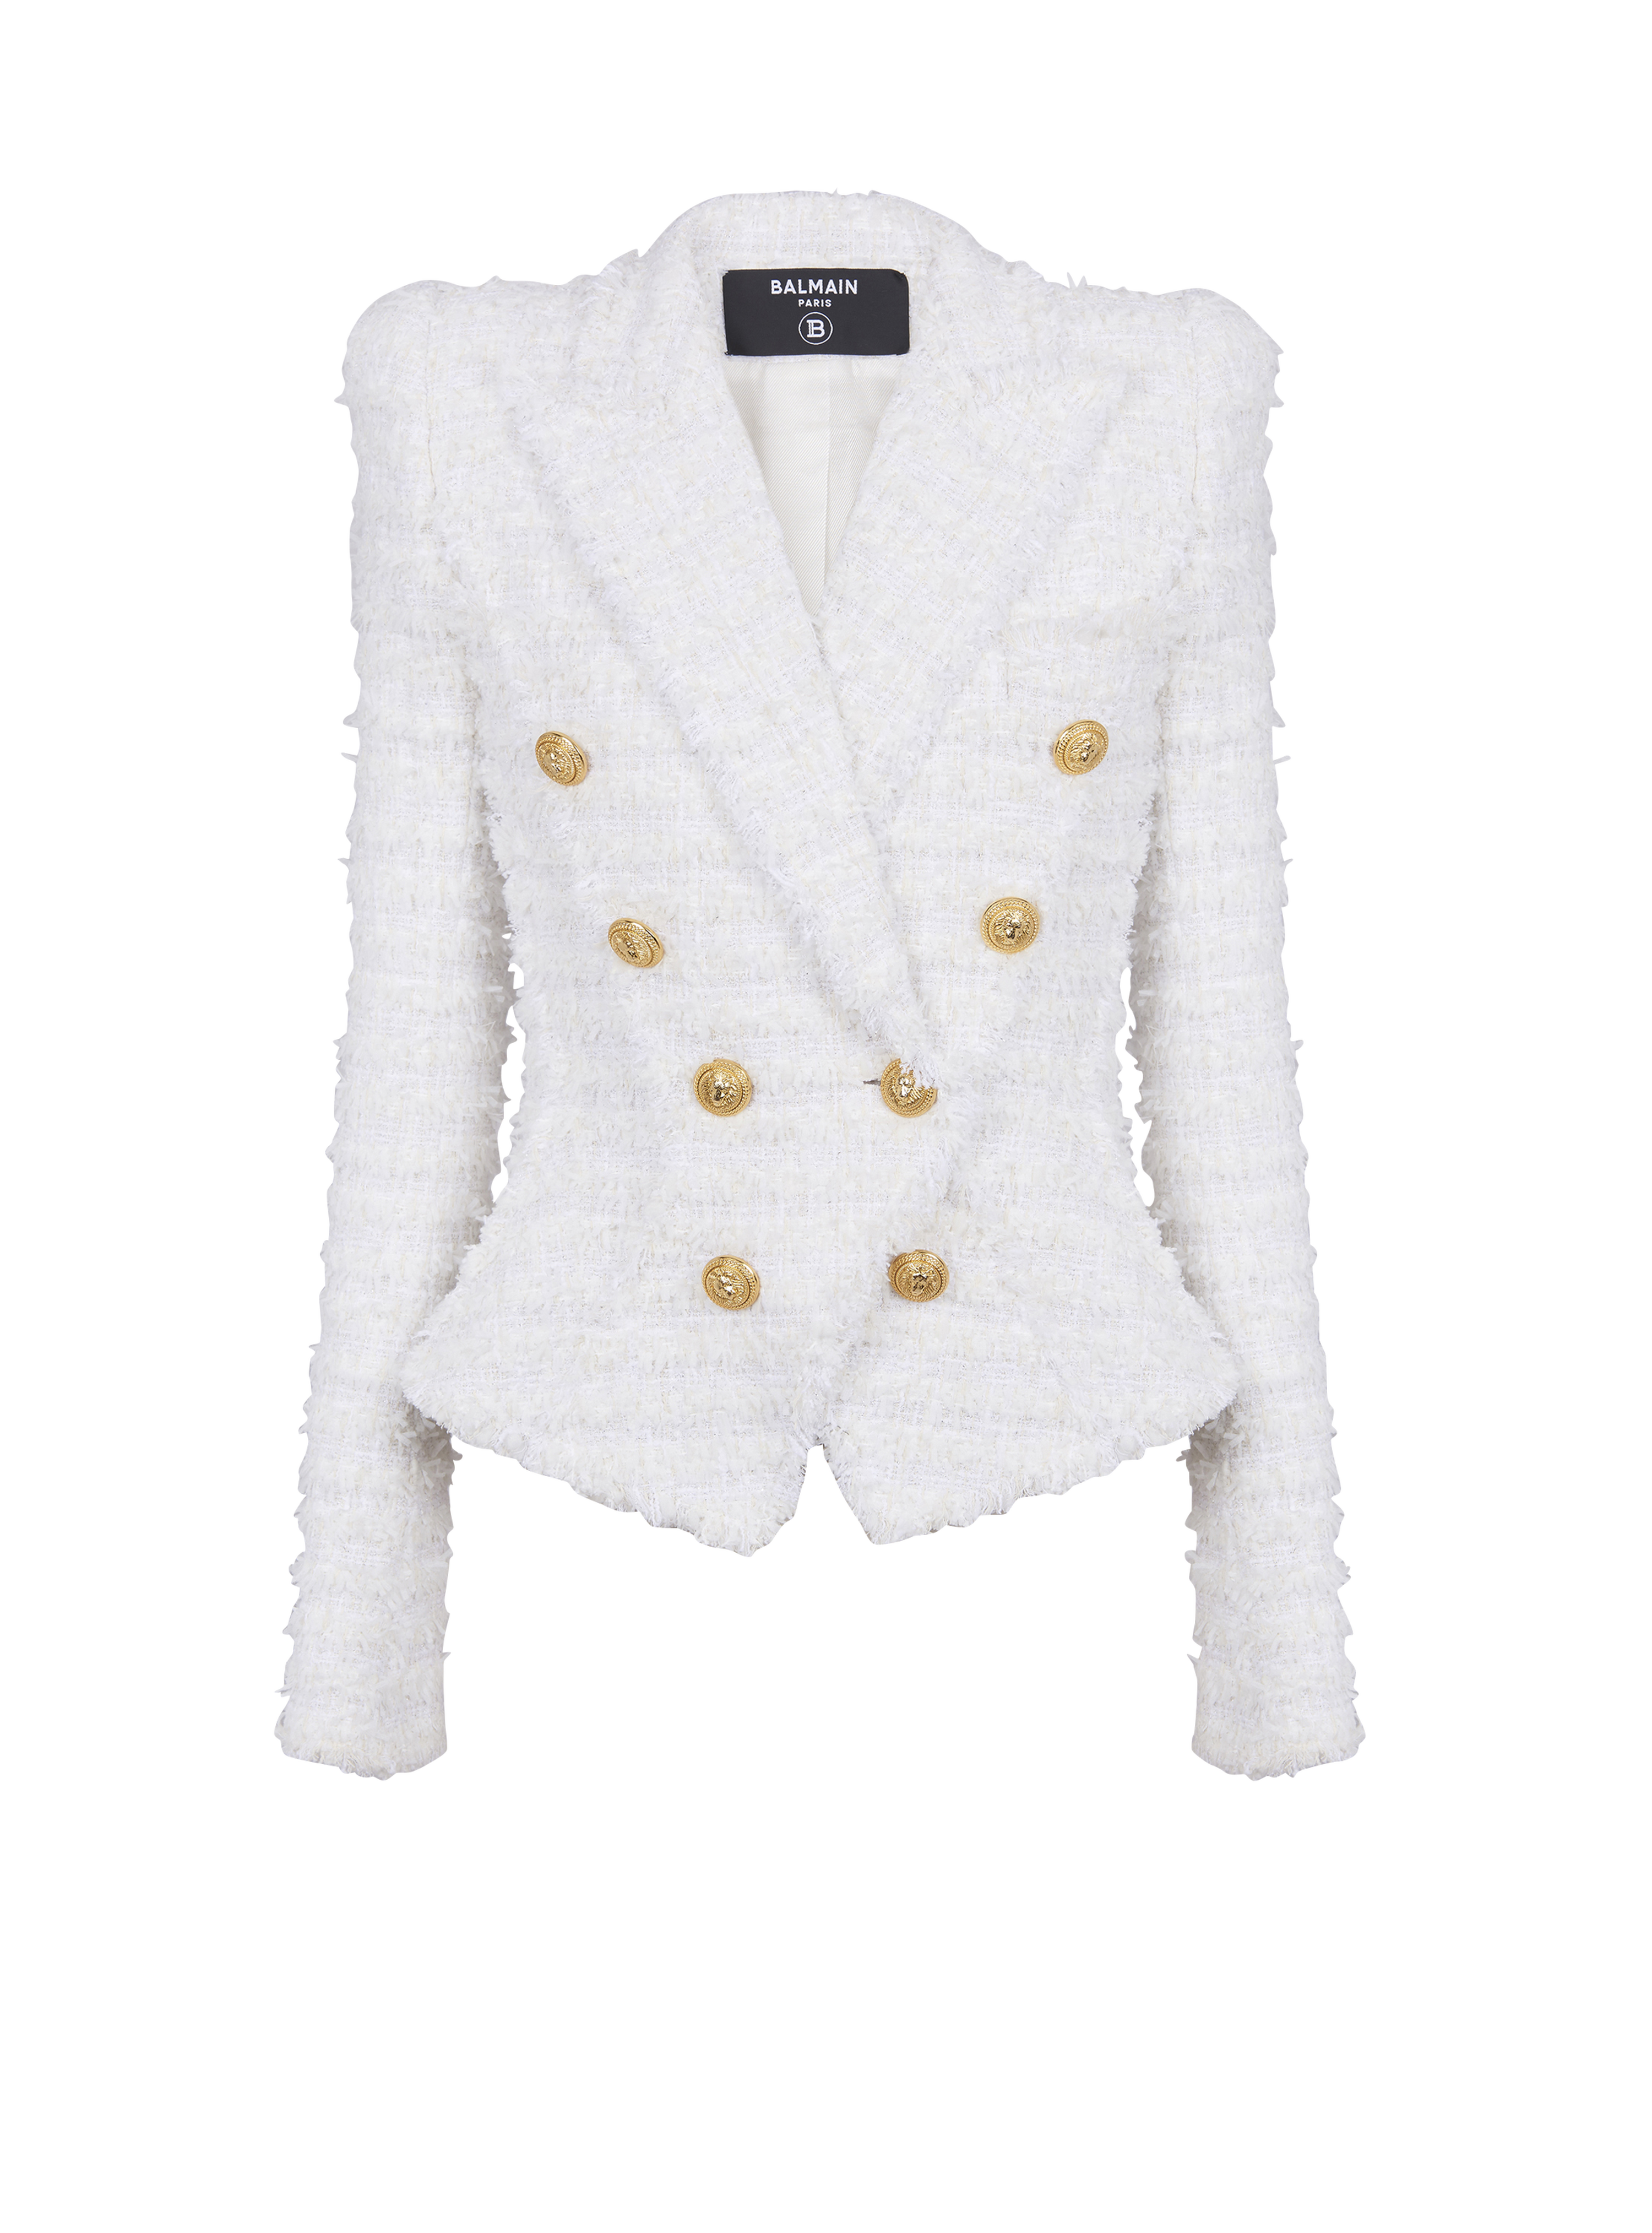 Slim-fit tweed jacket, white